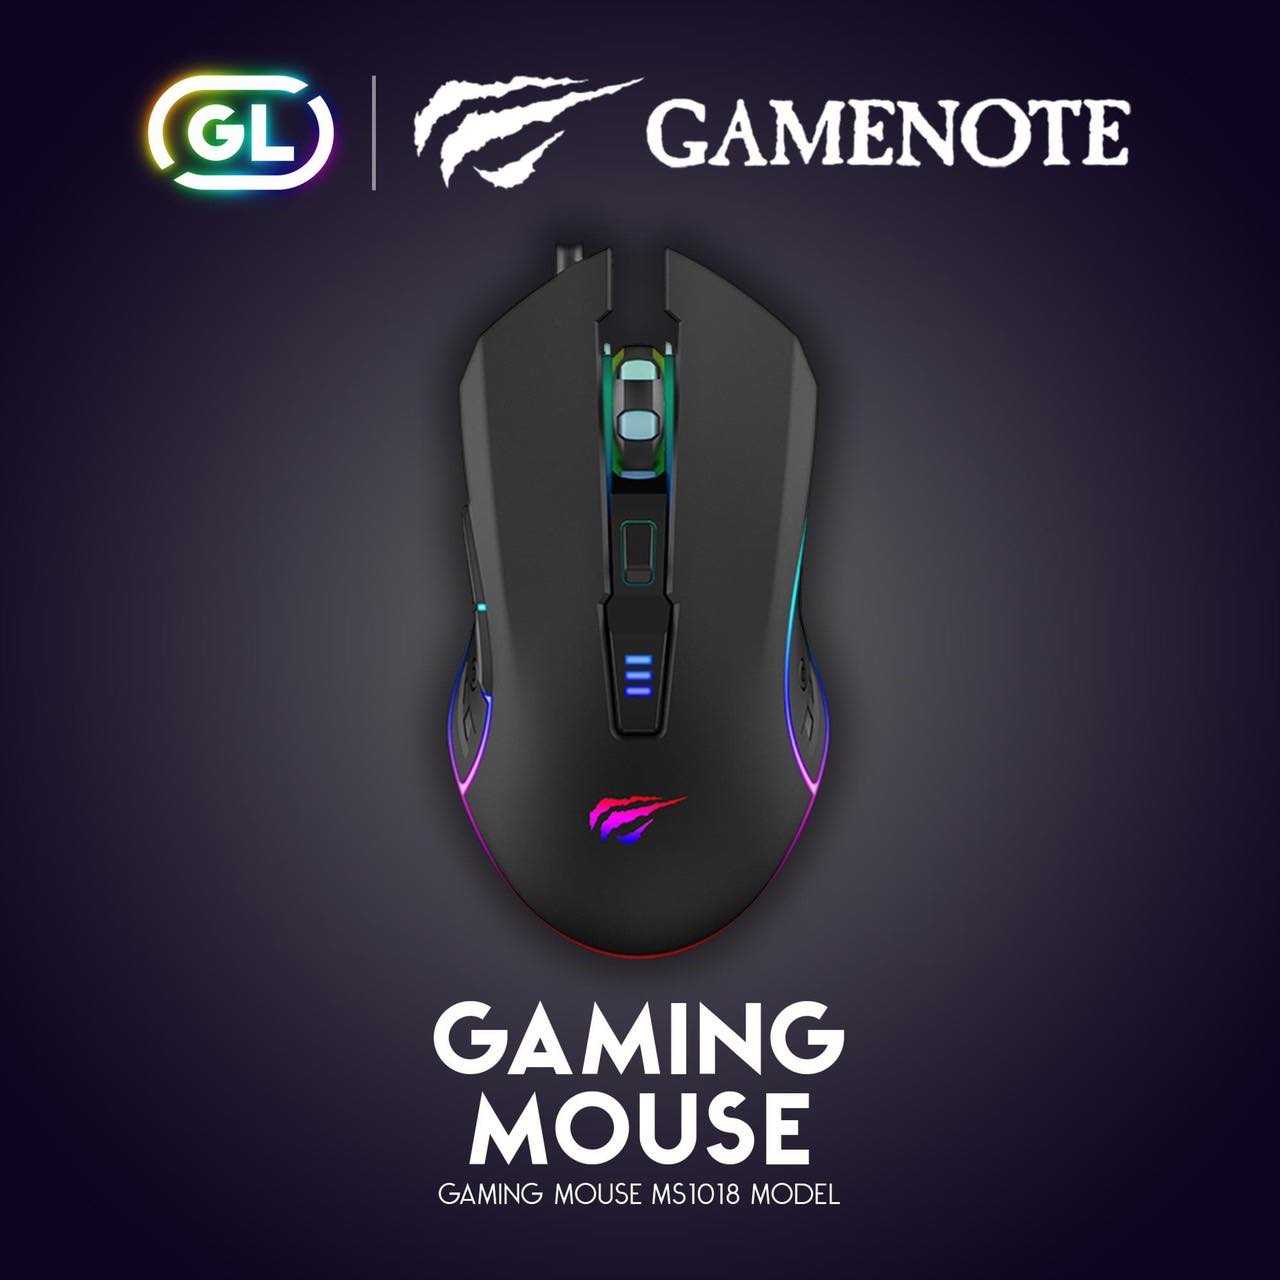 Gamenote RGB Gaming mouse เมาส์เกมมิ่ง เม้าส์เกมมิ่ง มีไฟ RGB GM 1018 havit 1000-3200DPI